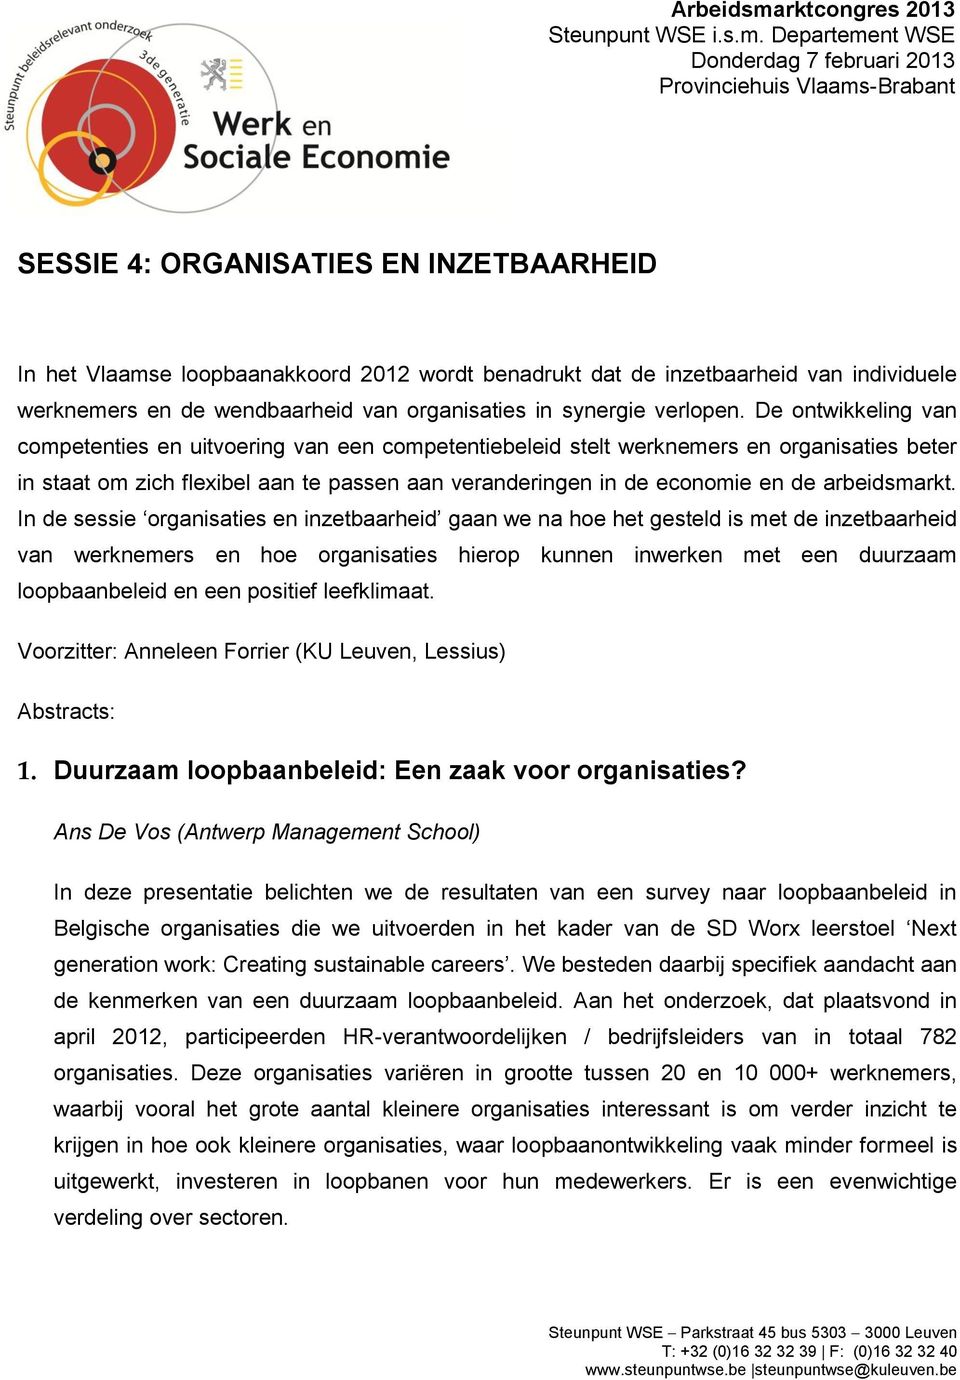 Departement WSE Donderdag 7 februari 2013 Provinciehuis Vlaams-Brabant SESSIE 4: ORGANISATIES EN INZETBAARHEID In het Vlaamse loopbaanakkoord 2012 wordt benadrukt dat de inzetbaarheid van individuele